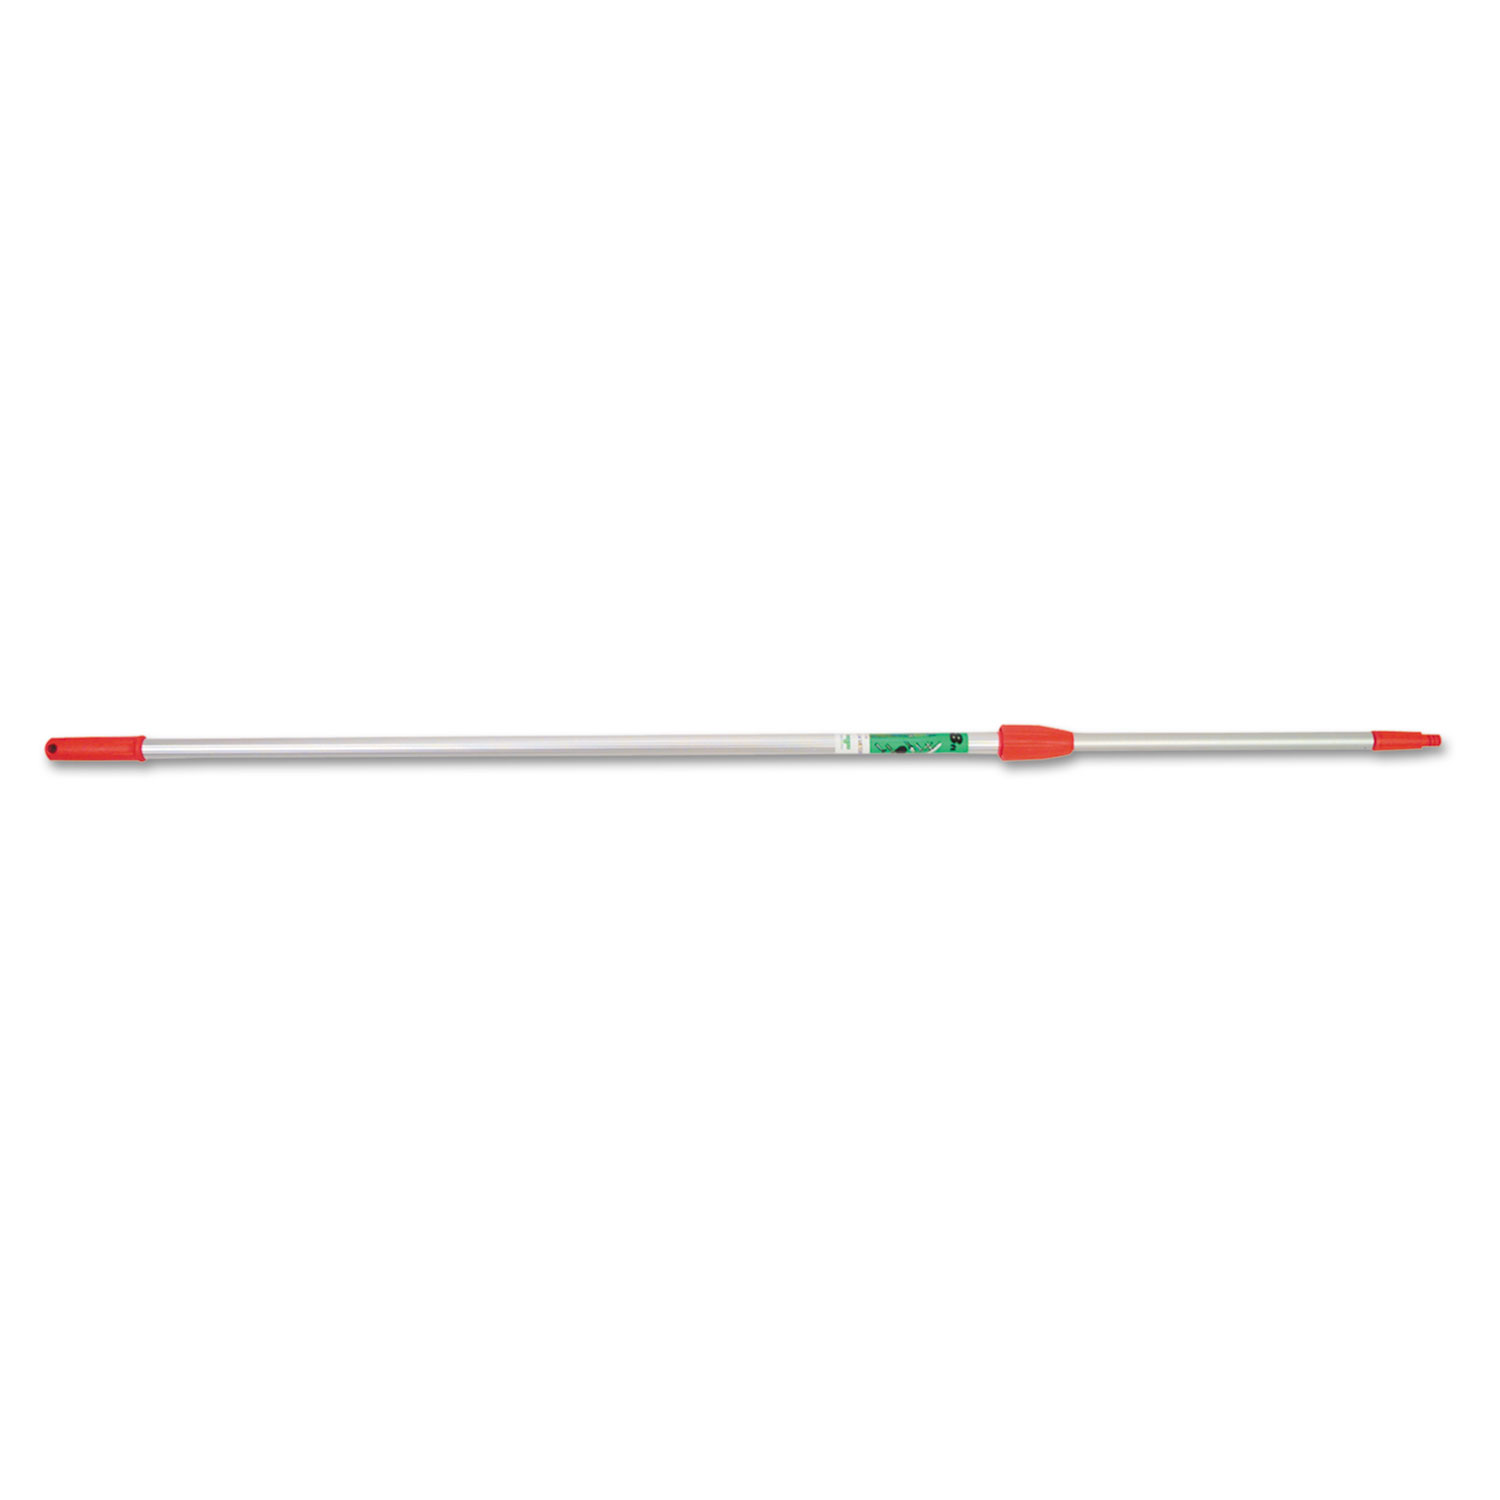 Ergo Tele Pole, 8ft, Aluminum/Red